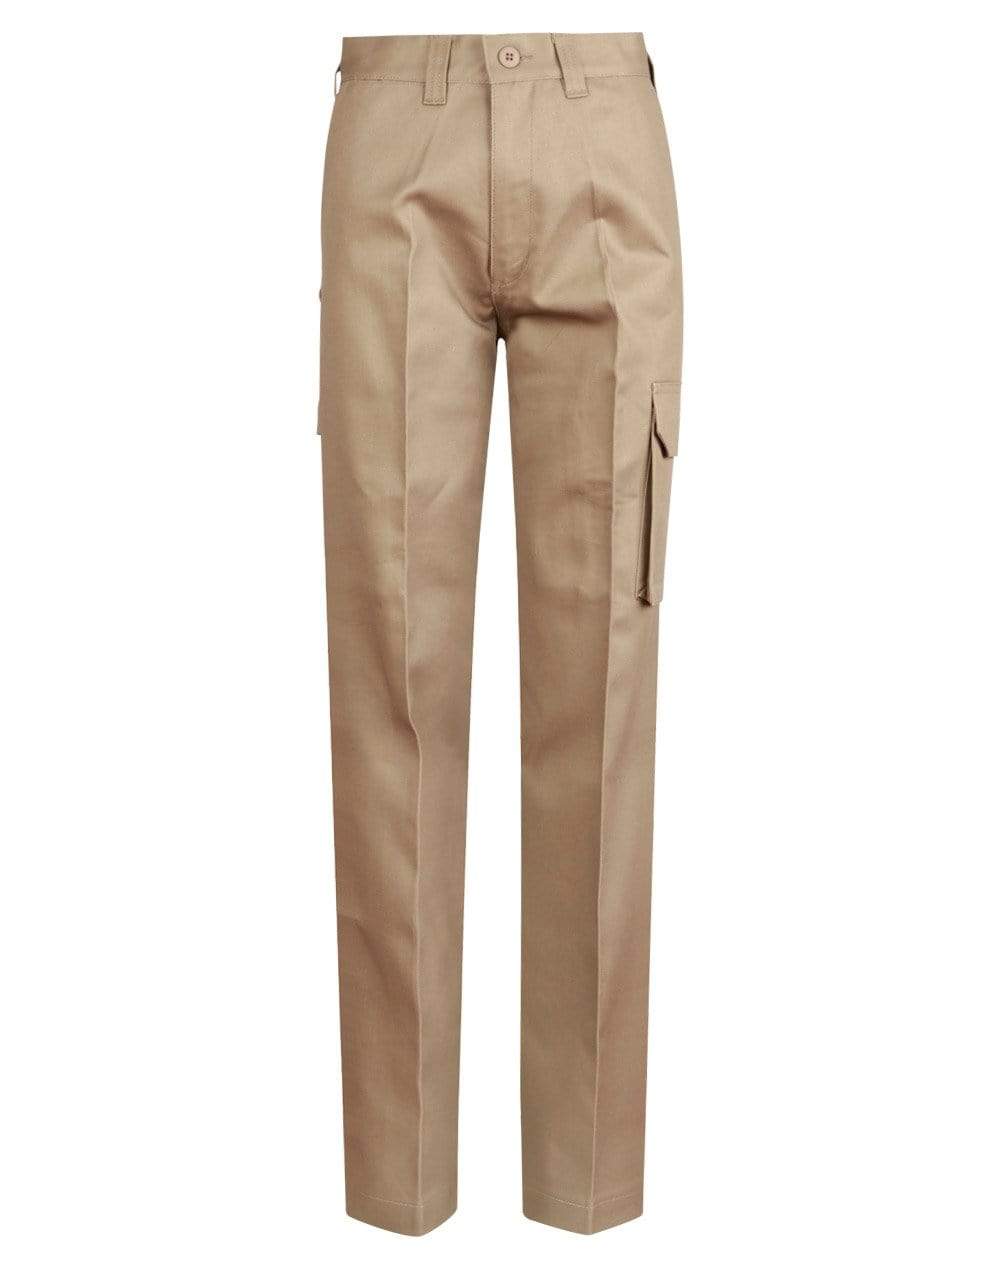 Men's Heavy Cotton Pre-shrunk Drill Pants Long Leg  WP13 Work Wear Australian Industrial Wear 74L Khaki 